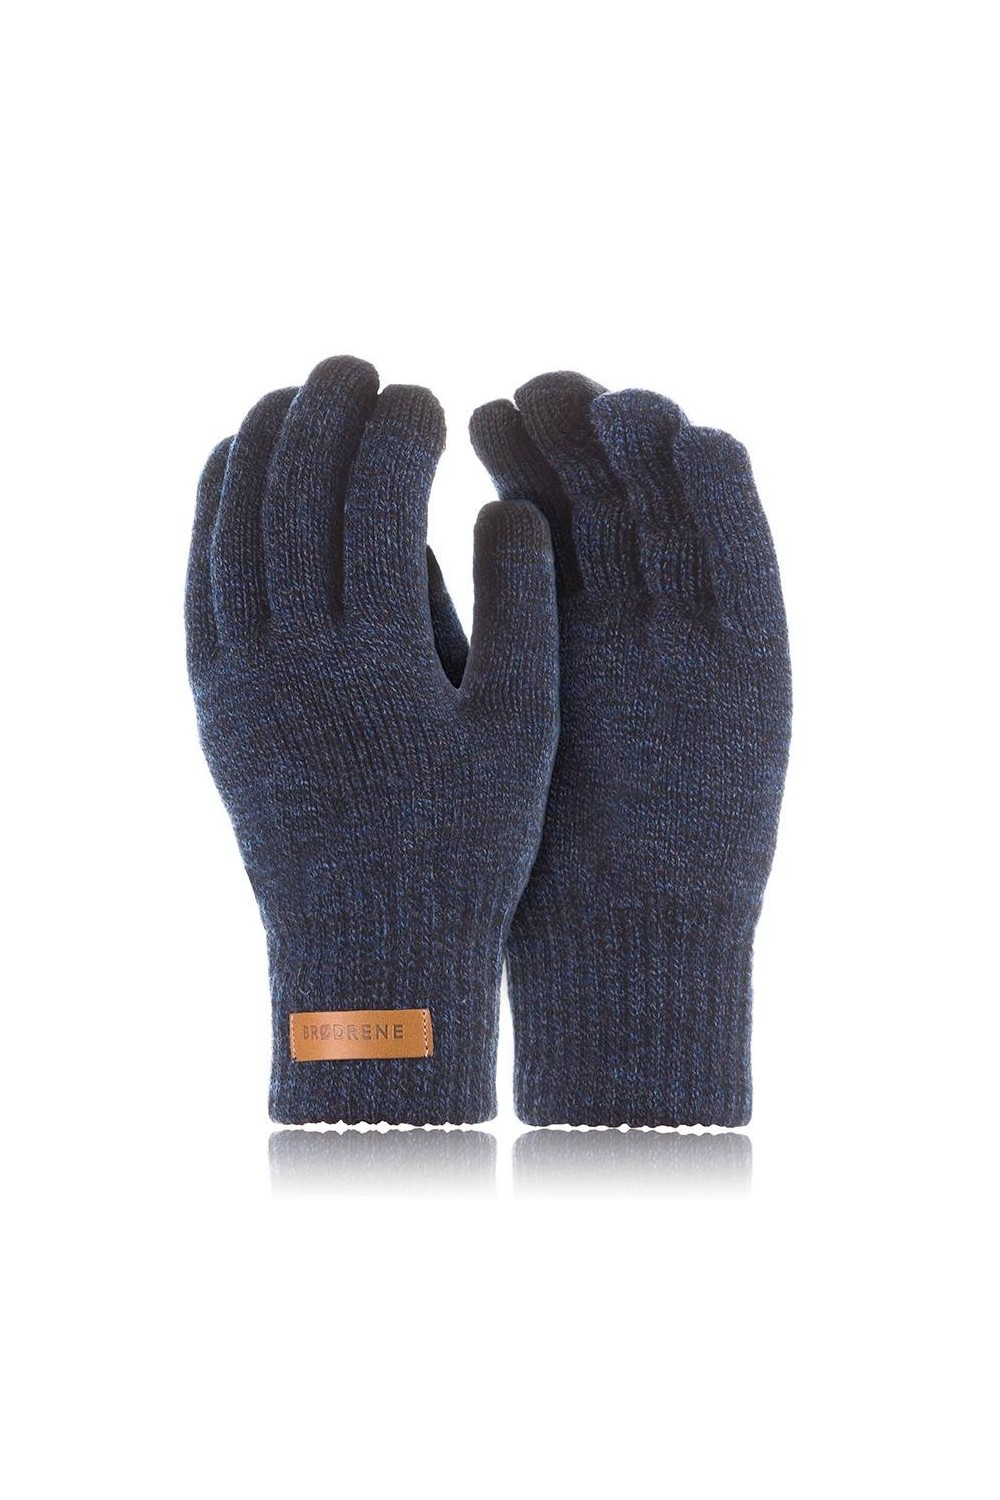 Ciepłe rękawiczki zimowe do smartfonów brodrene r1 granatowa mulina